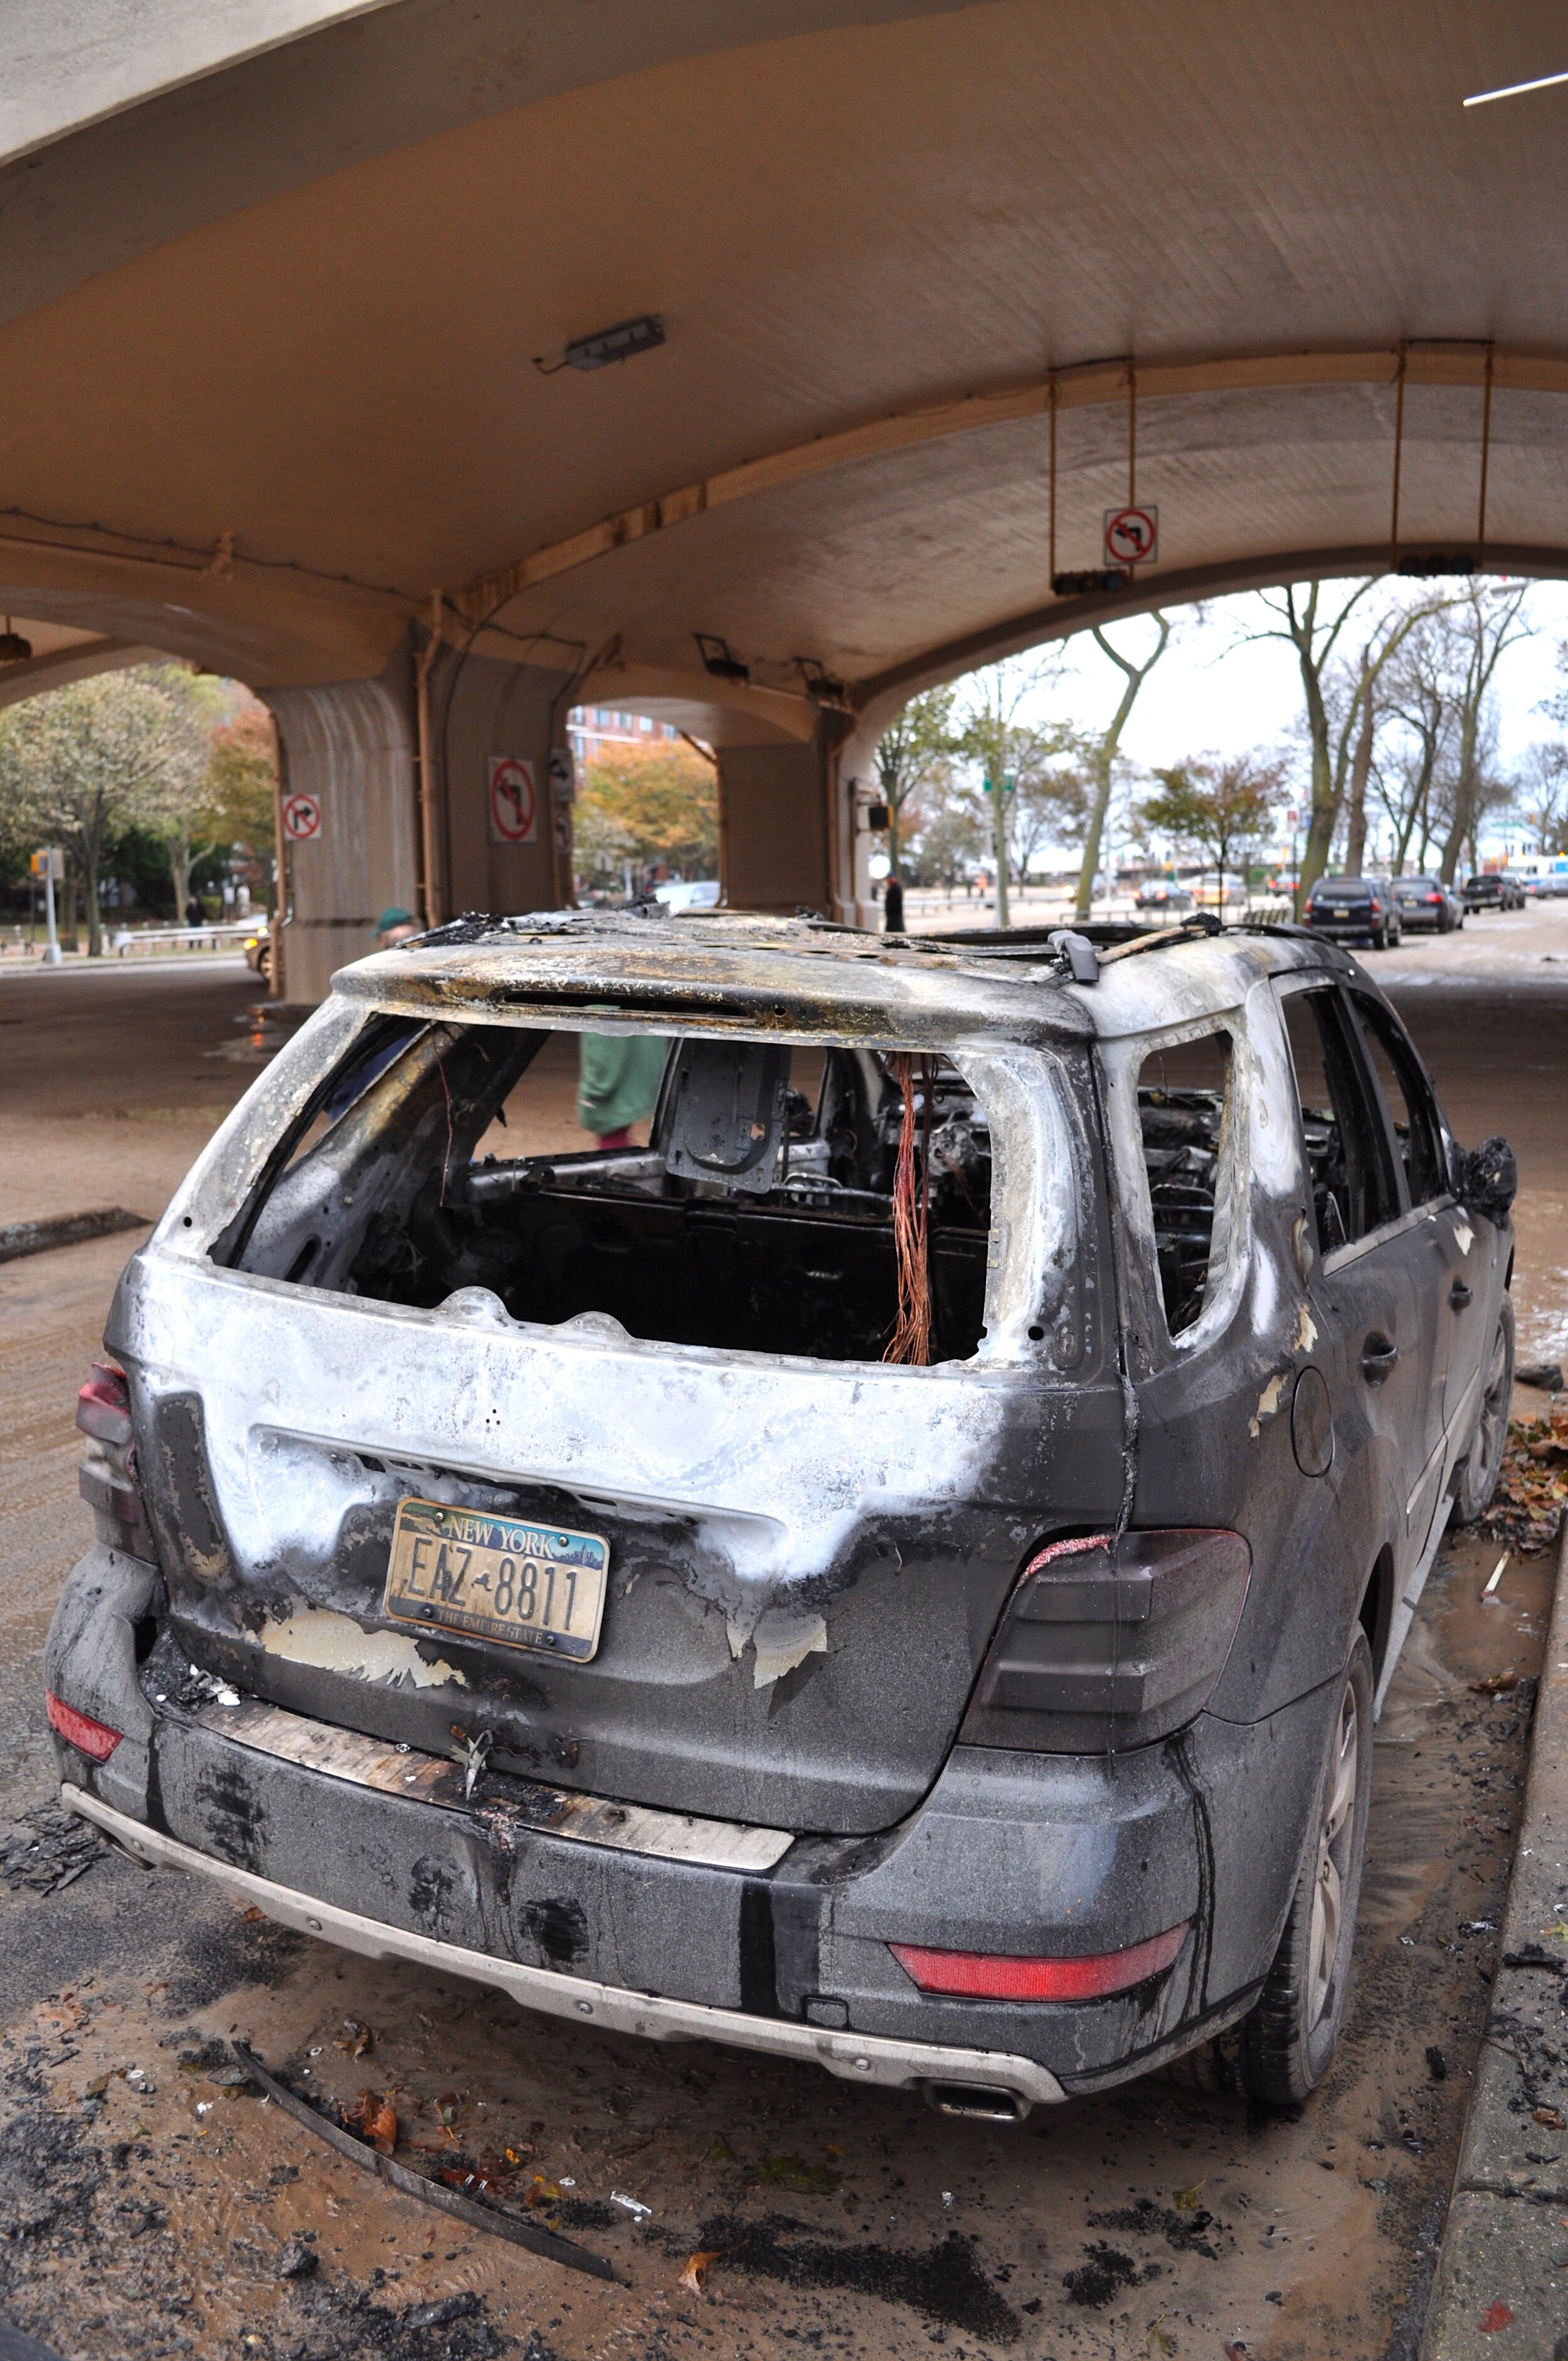 Burned Out Car In Coney Island - Brooklyn, New York (2012)